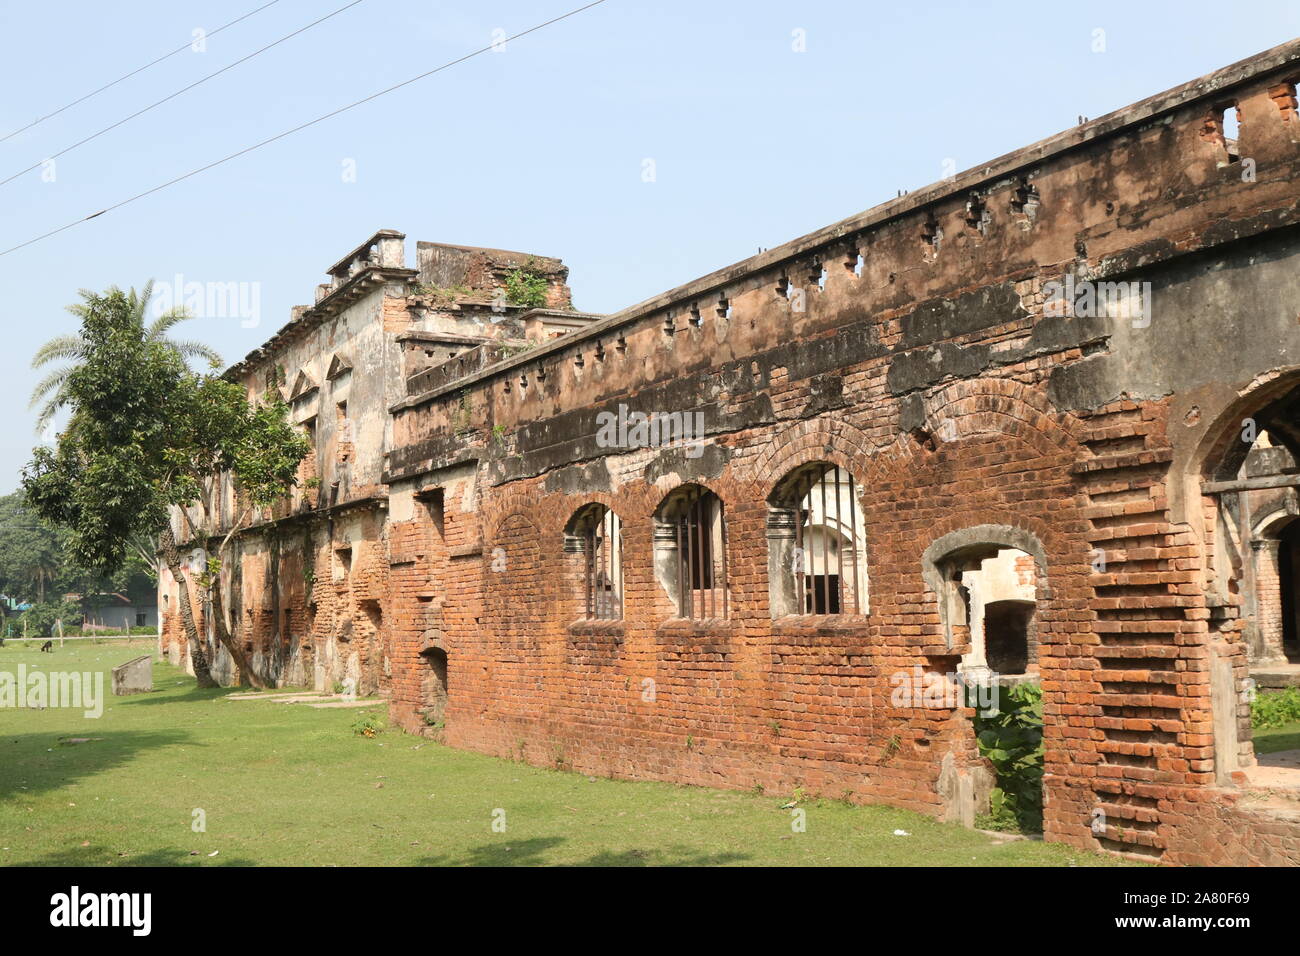 La storia del Bangladesh ha detto che un sacco di antico edificio aveva fatto in questo paese. Palazzo Teota, Teota, Manikgan, Dhaka, il Bangladesh è uno di loro. Giglio di acqua è il fiore nazionale di Banglades. Foto Stock